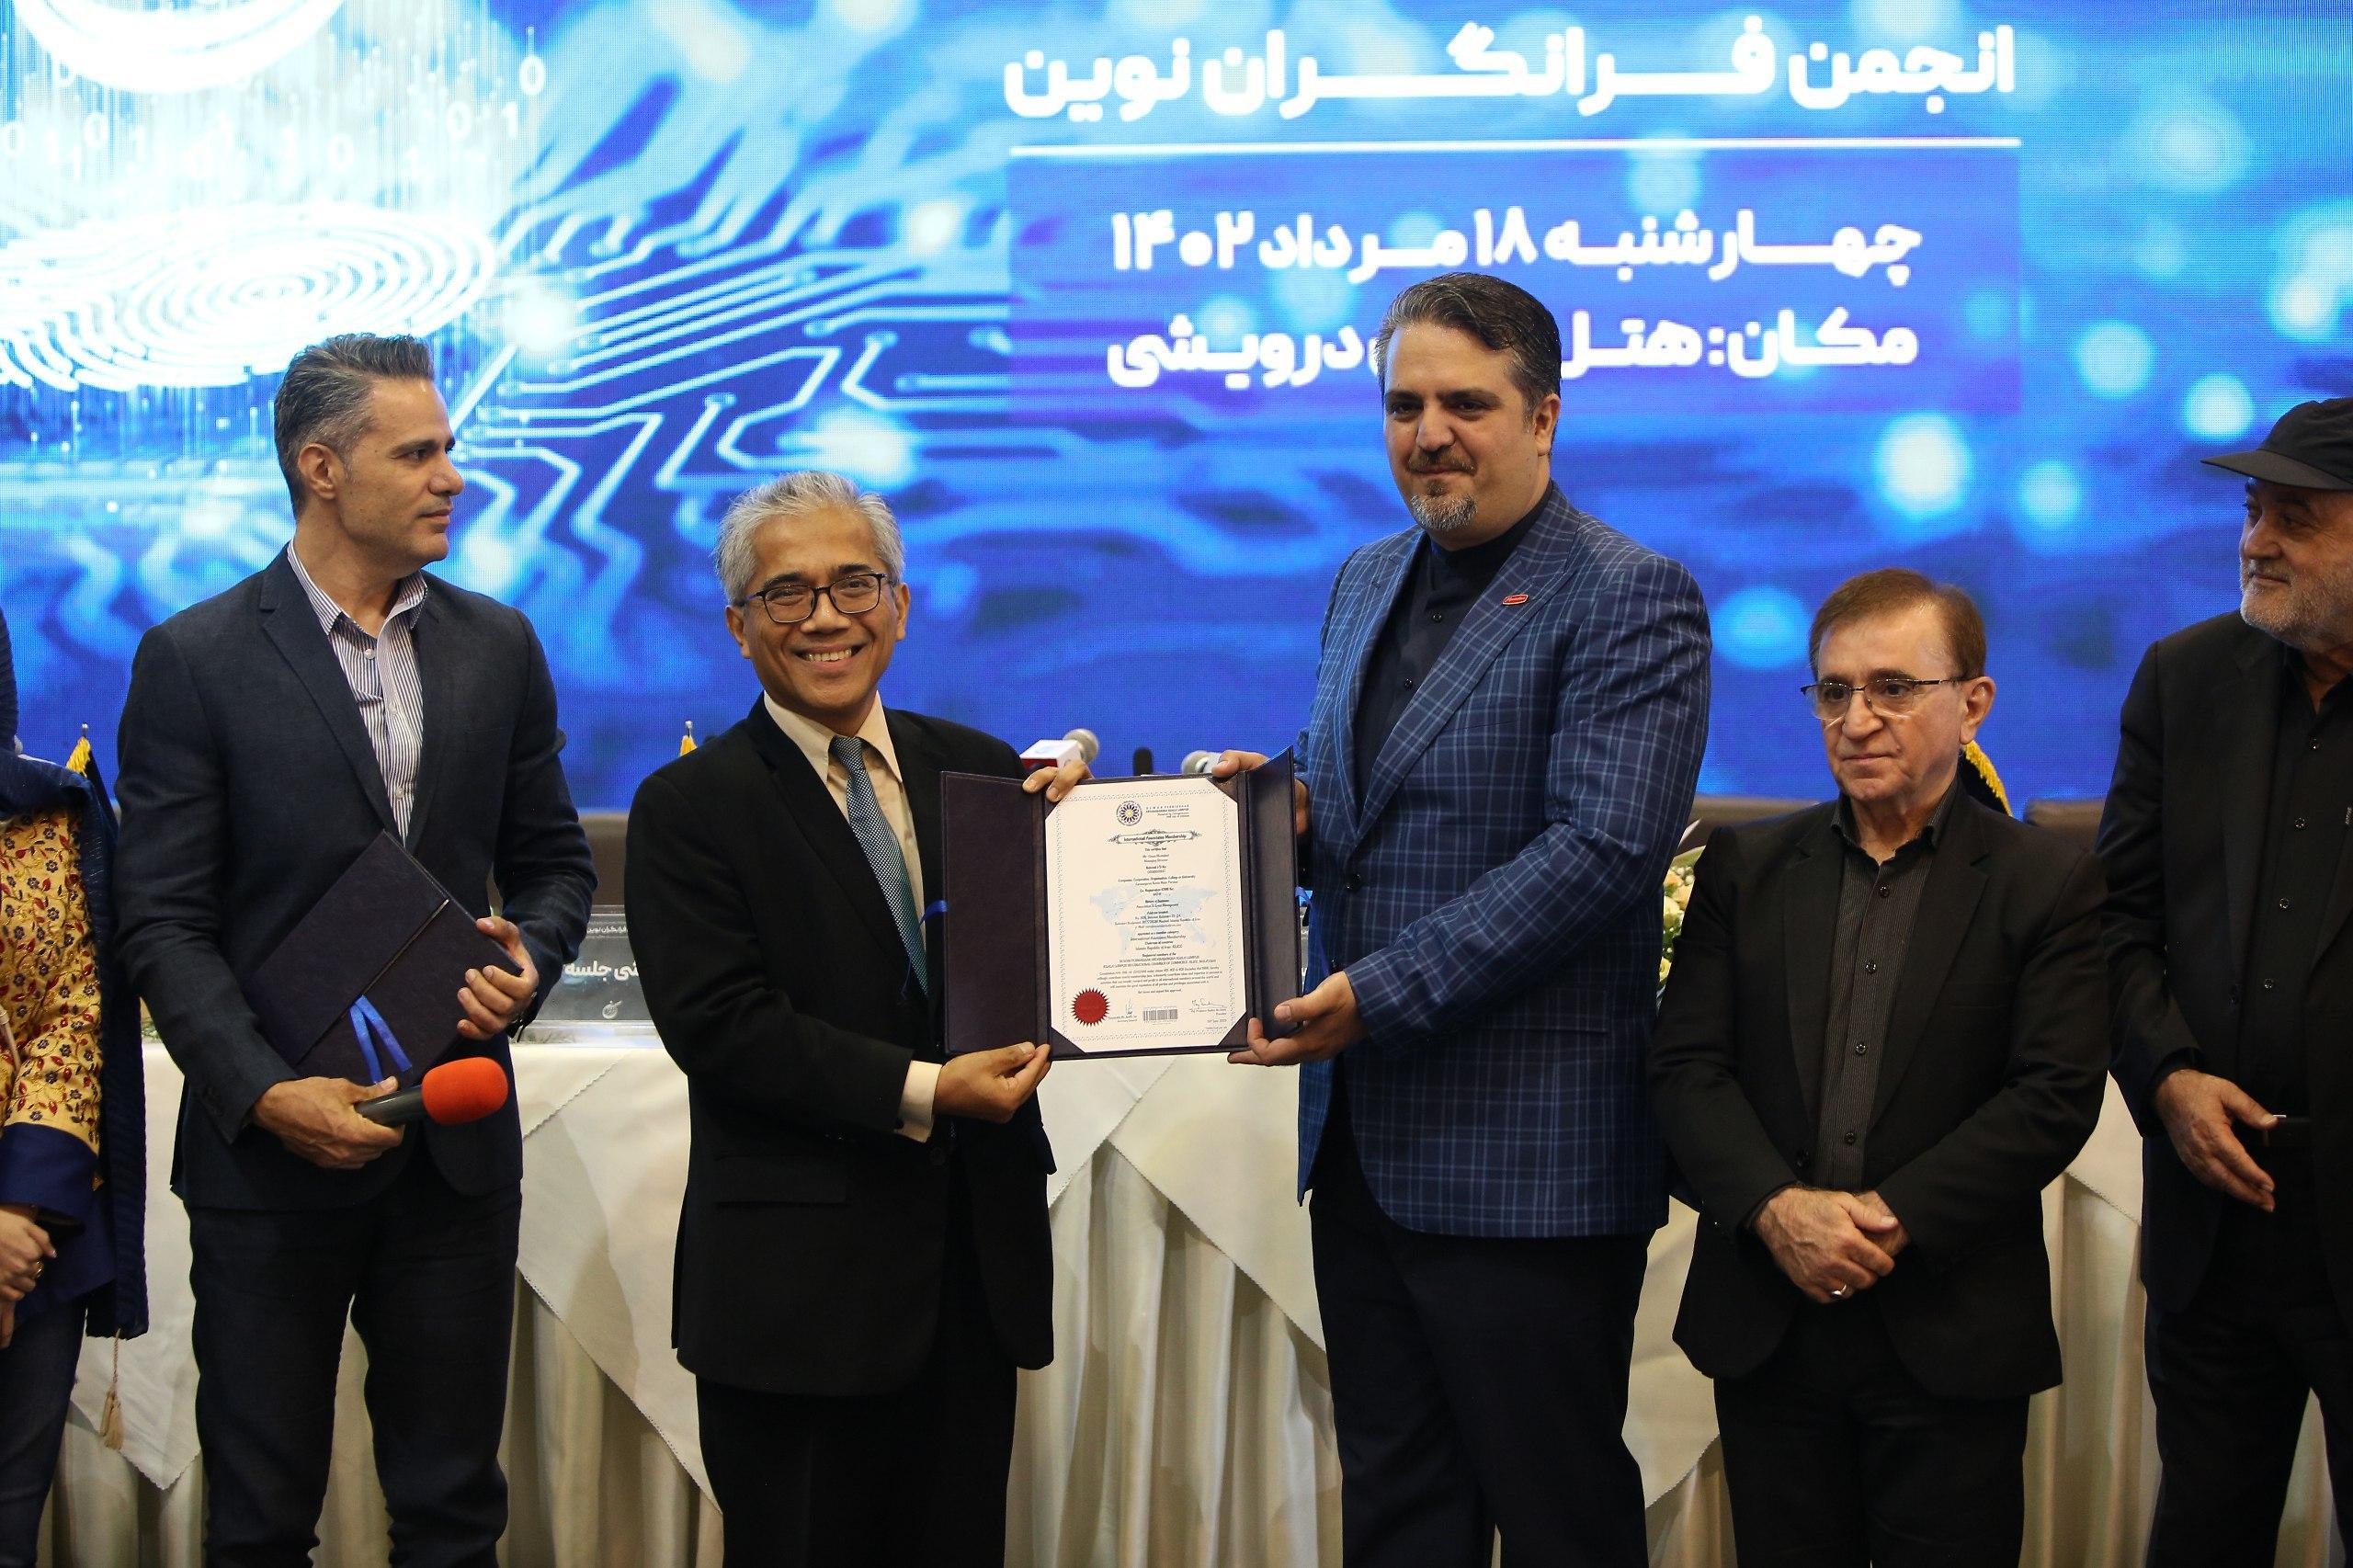 عضویت 350 شرکت ایرانی در اتاق کوالالامپور